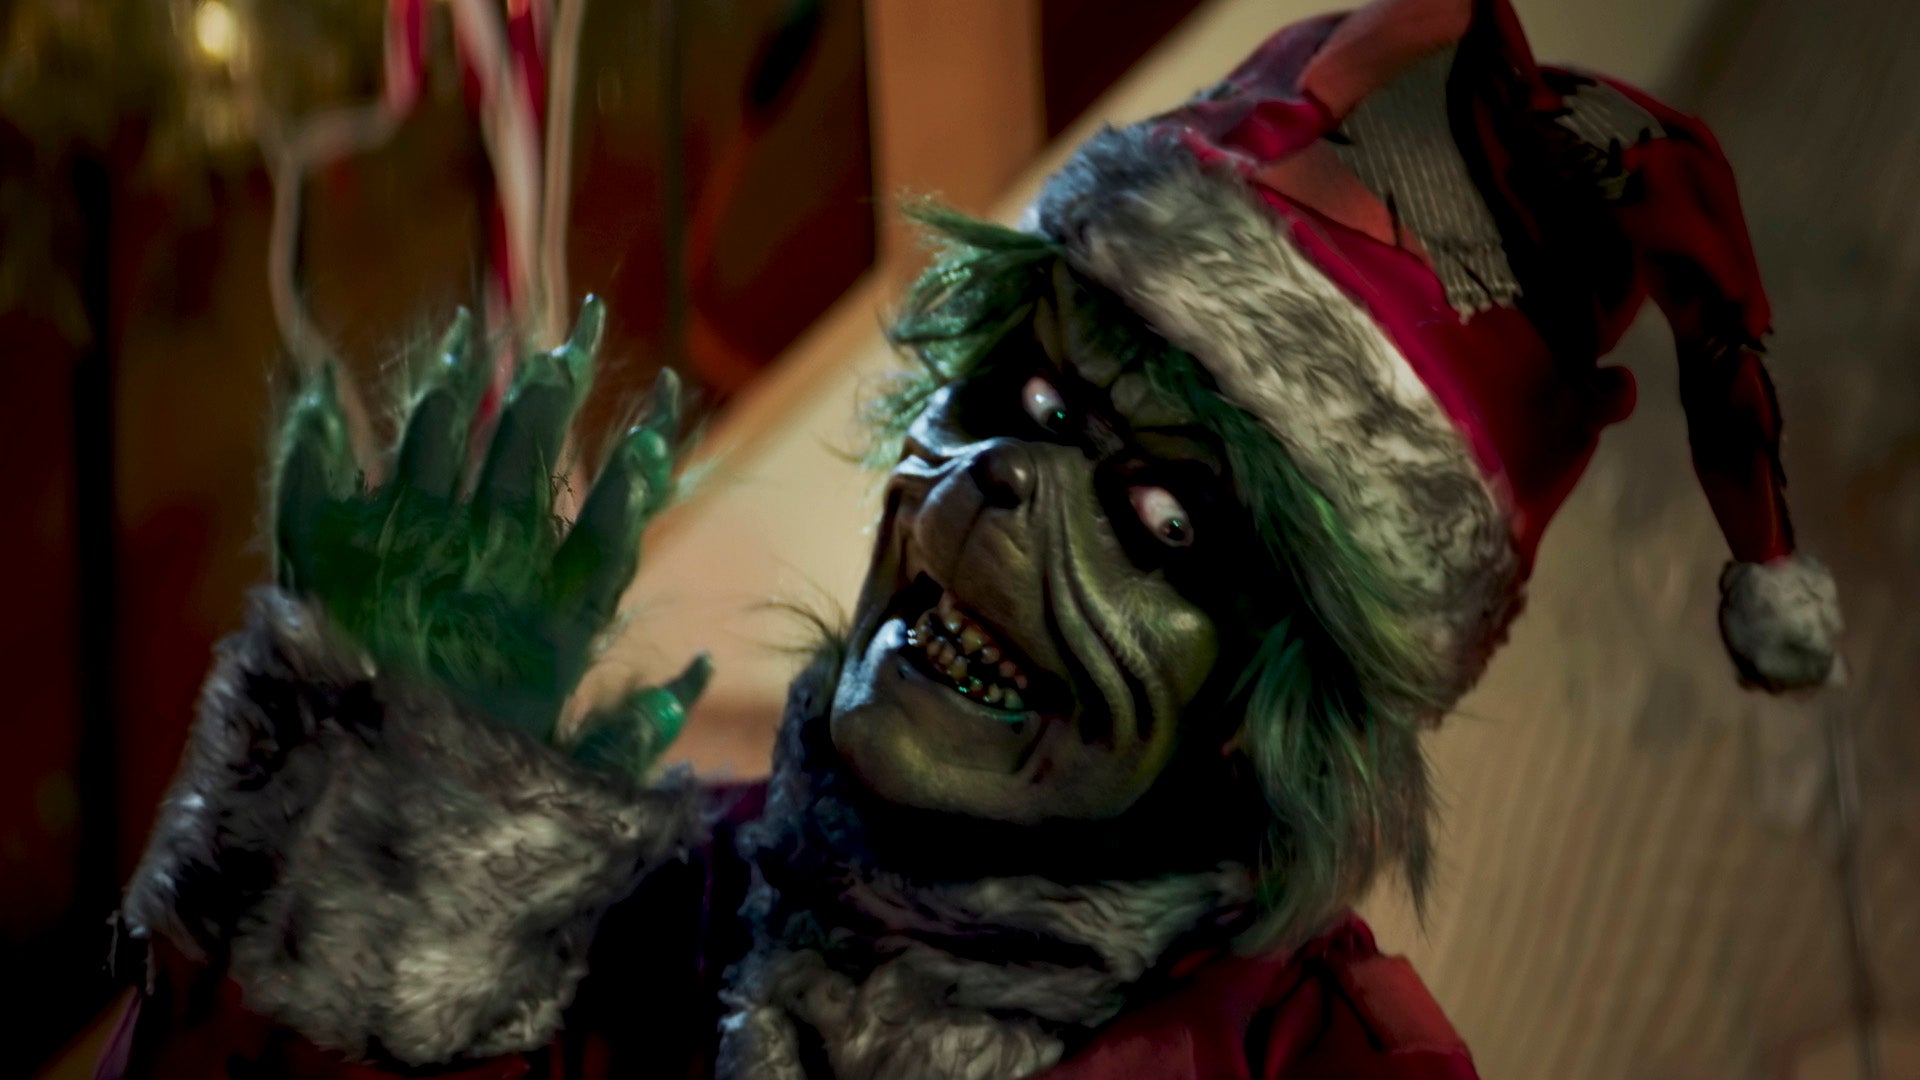 Grinch será assassino em novo filme de terror natalino - NerdBunker